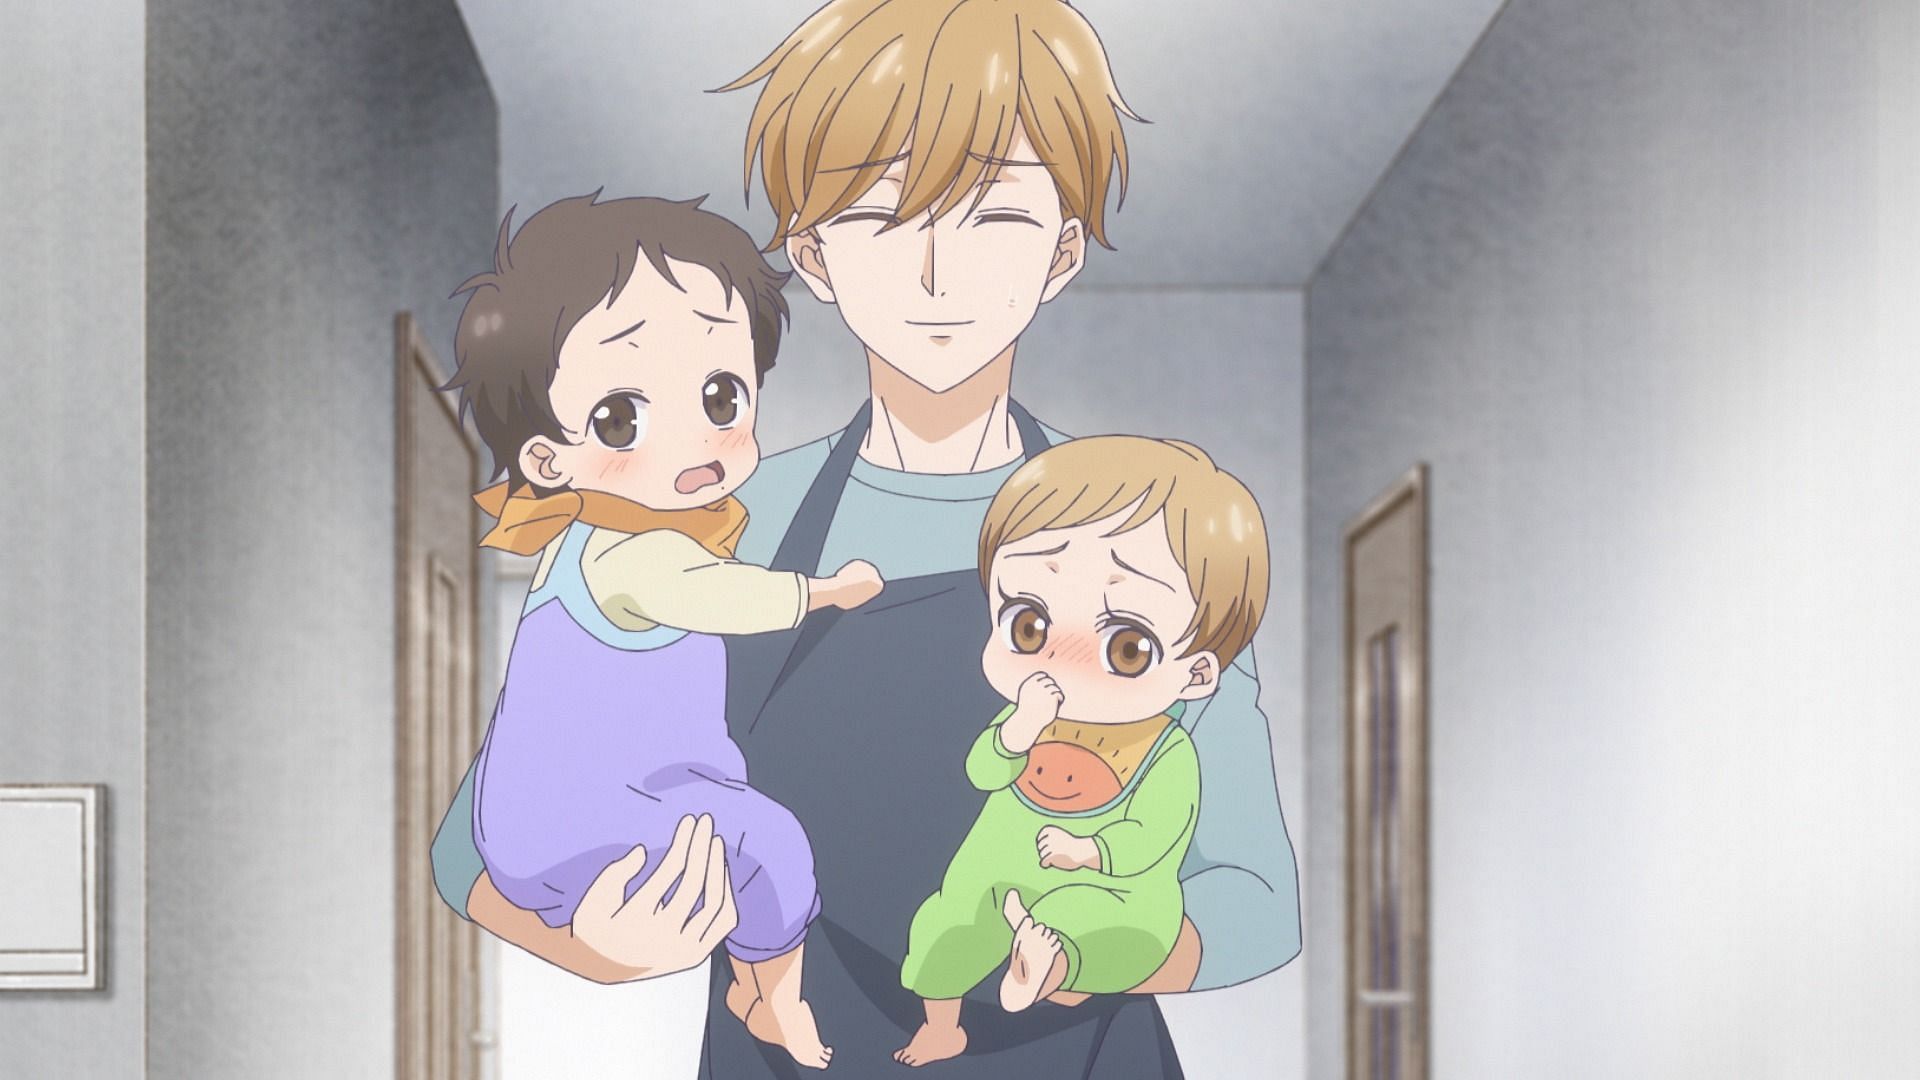 Hikari, Masaki, and Hinata as seen in the anime (Image via Studio DEEN)